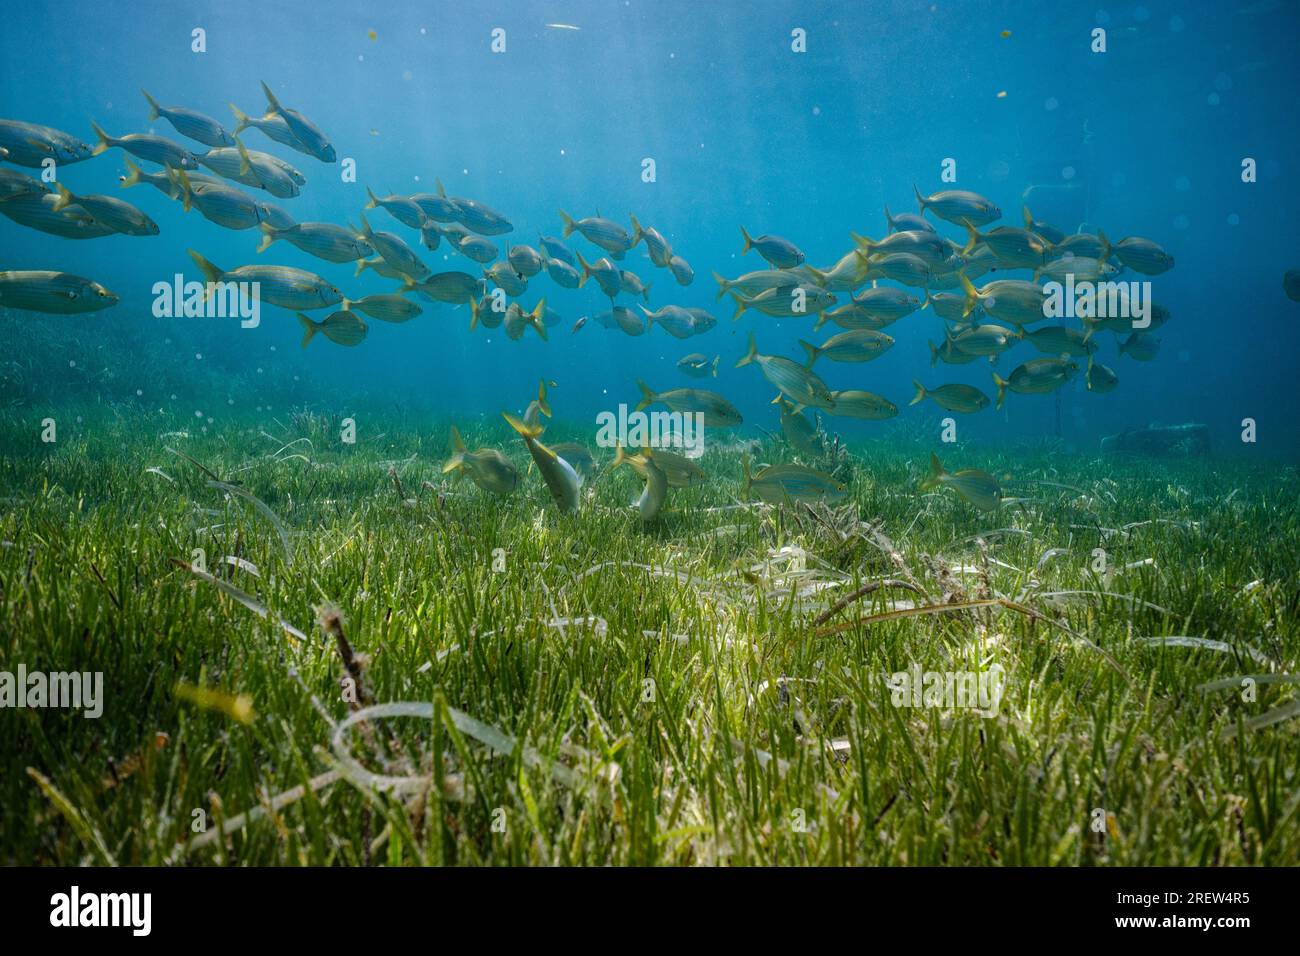 Exotische Fischschule schwimmt unter Wasser im tiefen blauen Ozean über grünen Algen mit Sonne, die durch das Wasser scheint Stockfoto